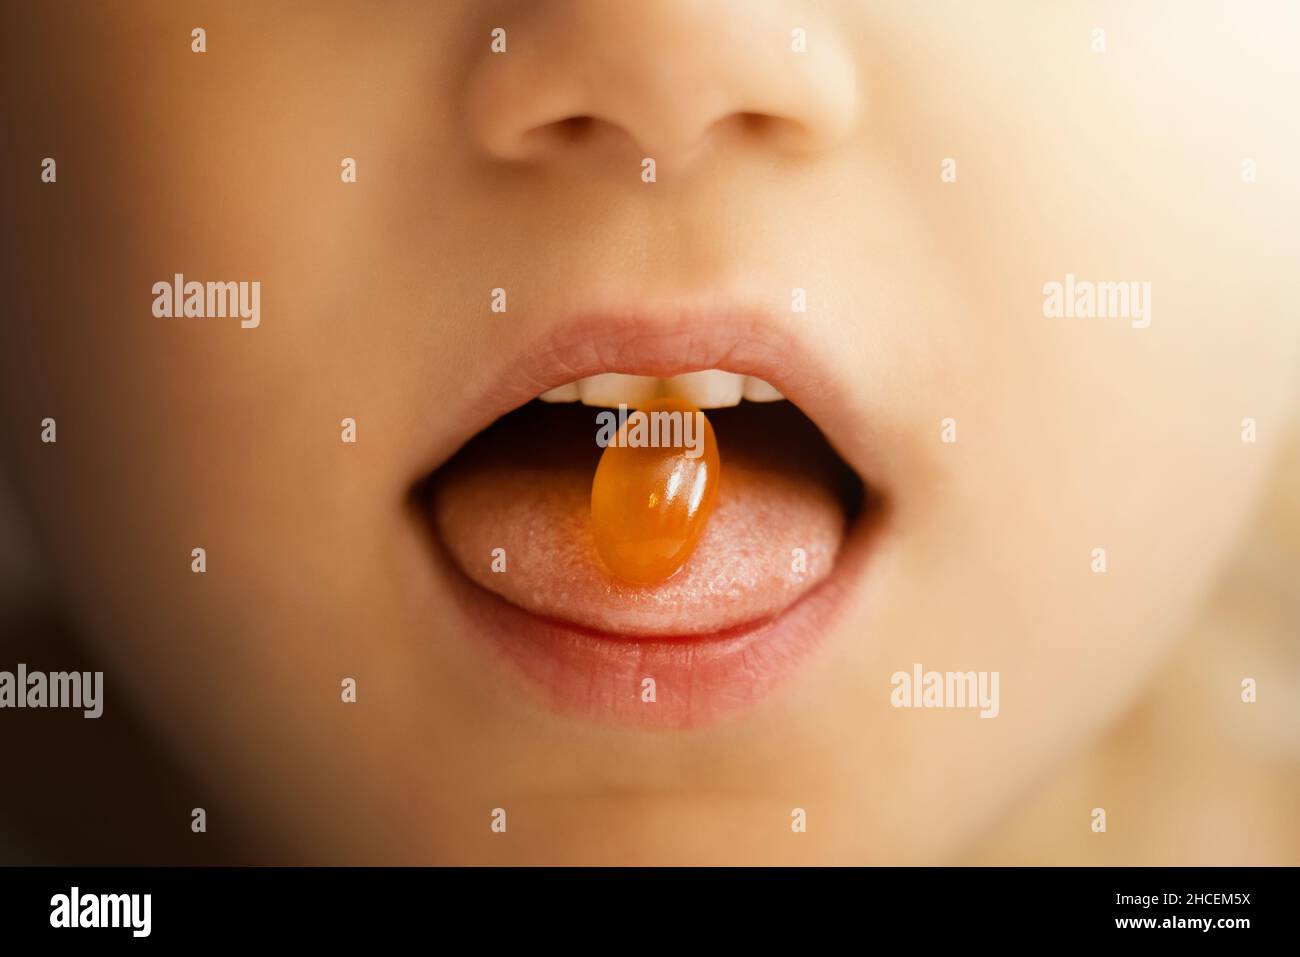 il bambino prende la capsula di omega 3. primo piano della bocca con la pillola dell'olio di pesce. supplementi dietetici Foto Stock